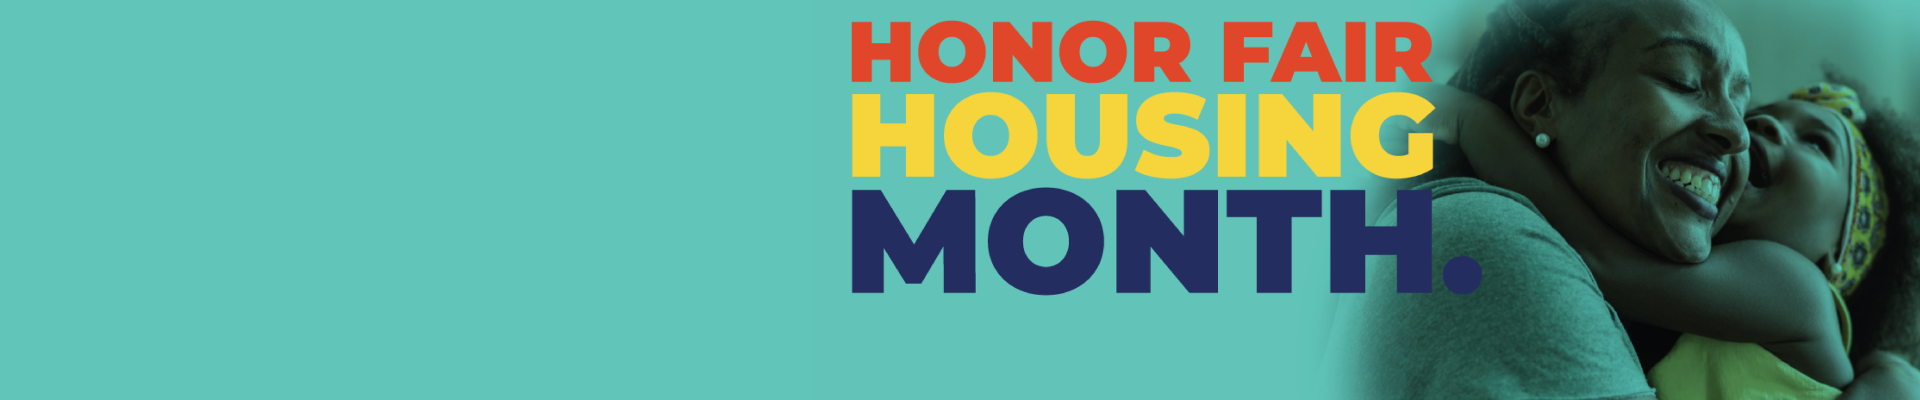 Honor Fair Housing Month